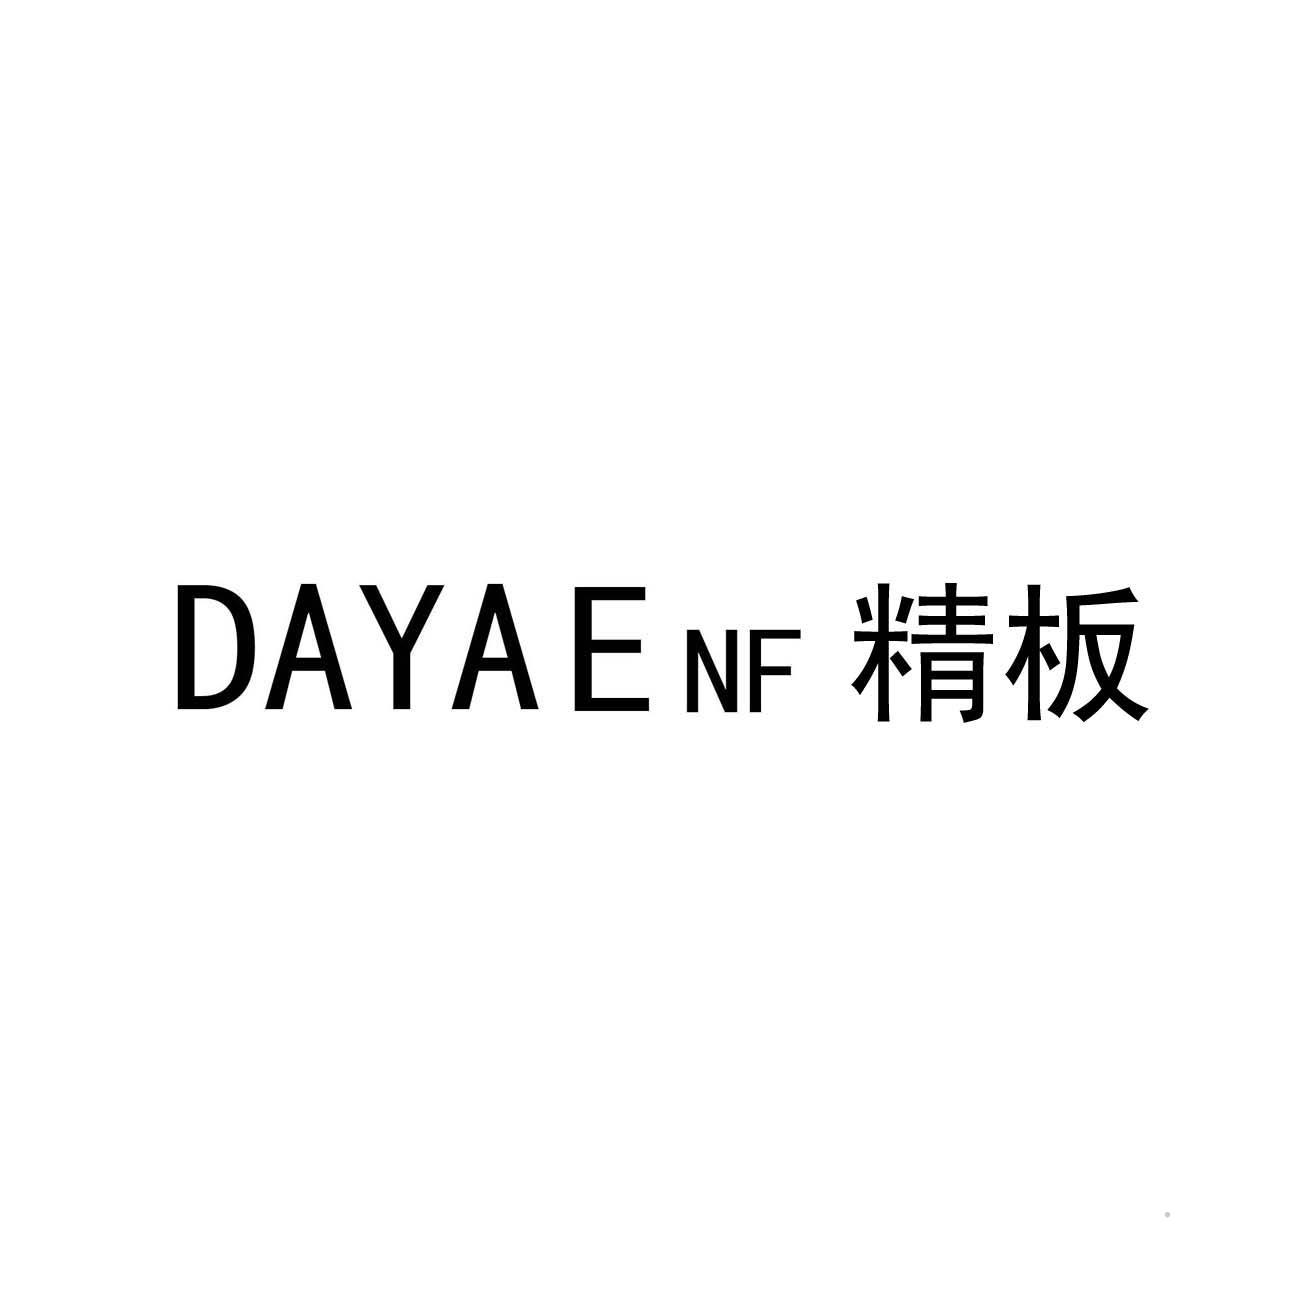 DAYAE NF 精板logo